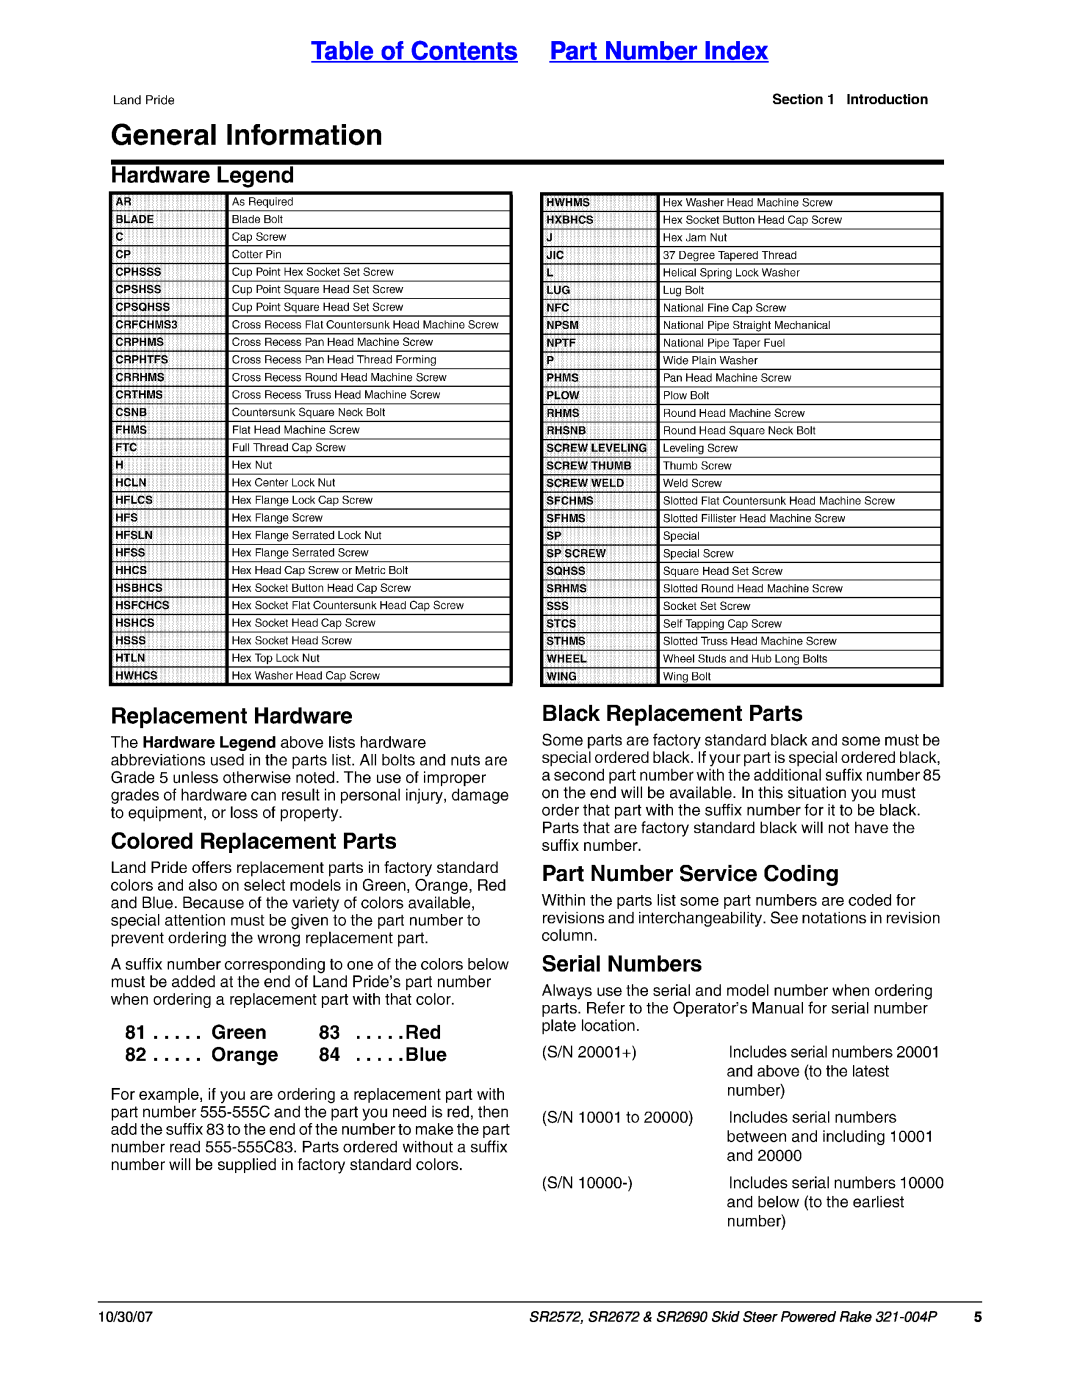 Land Pride SR2572, SR2690, SR2672 manual Table of Contents Part Number Index, 10/30/07 